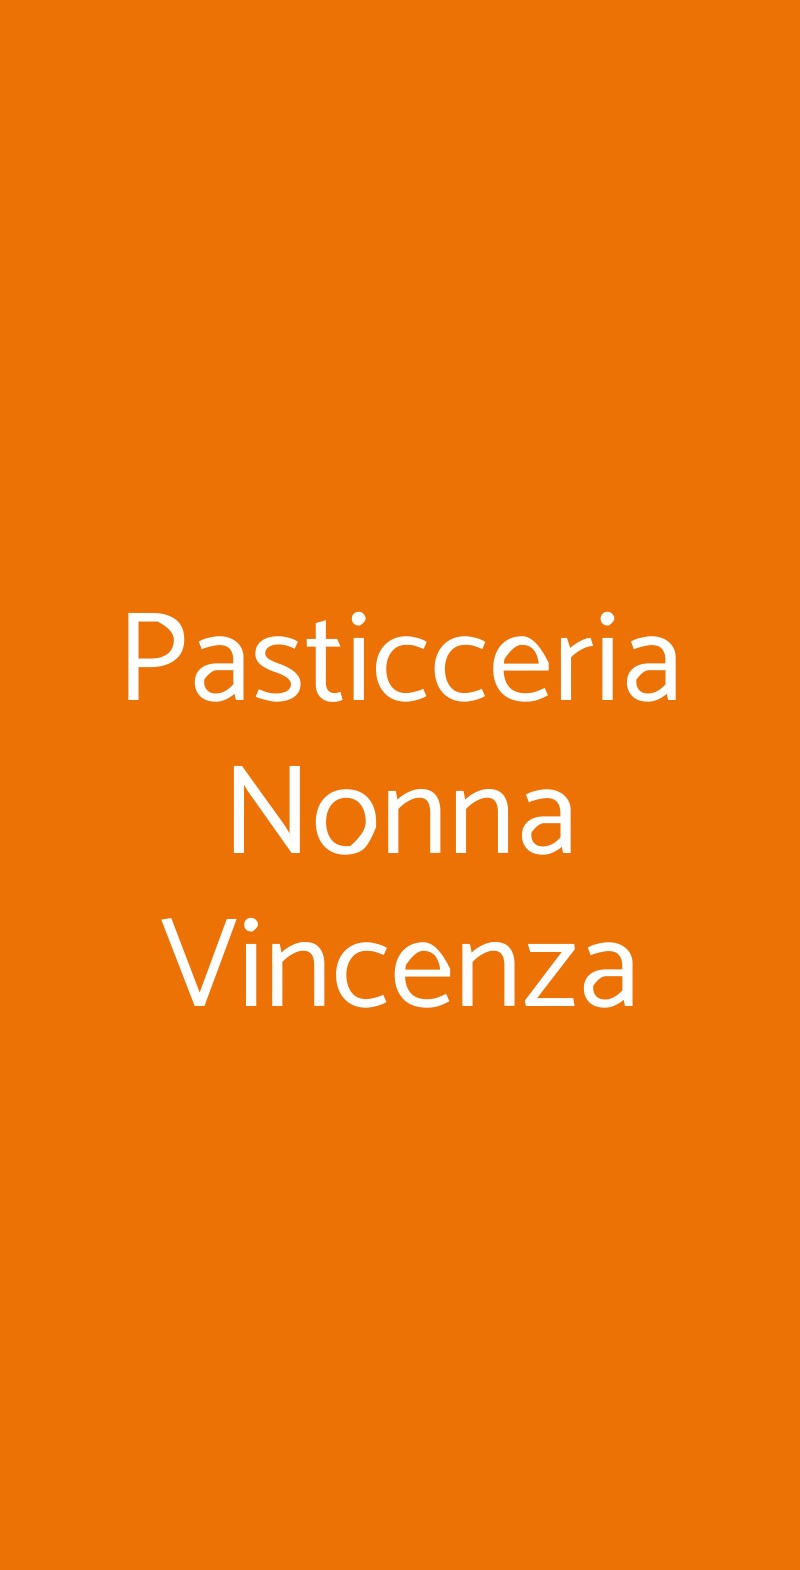 Pasticceria Pistone Bologna menù 1 pagina